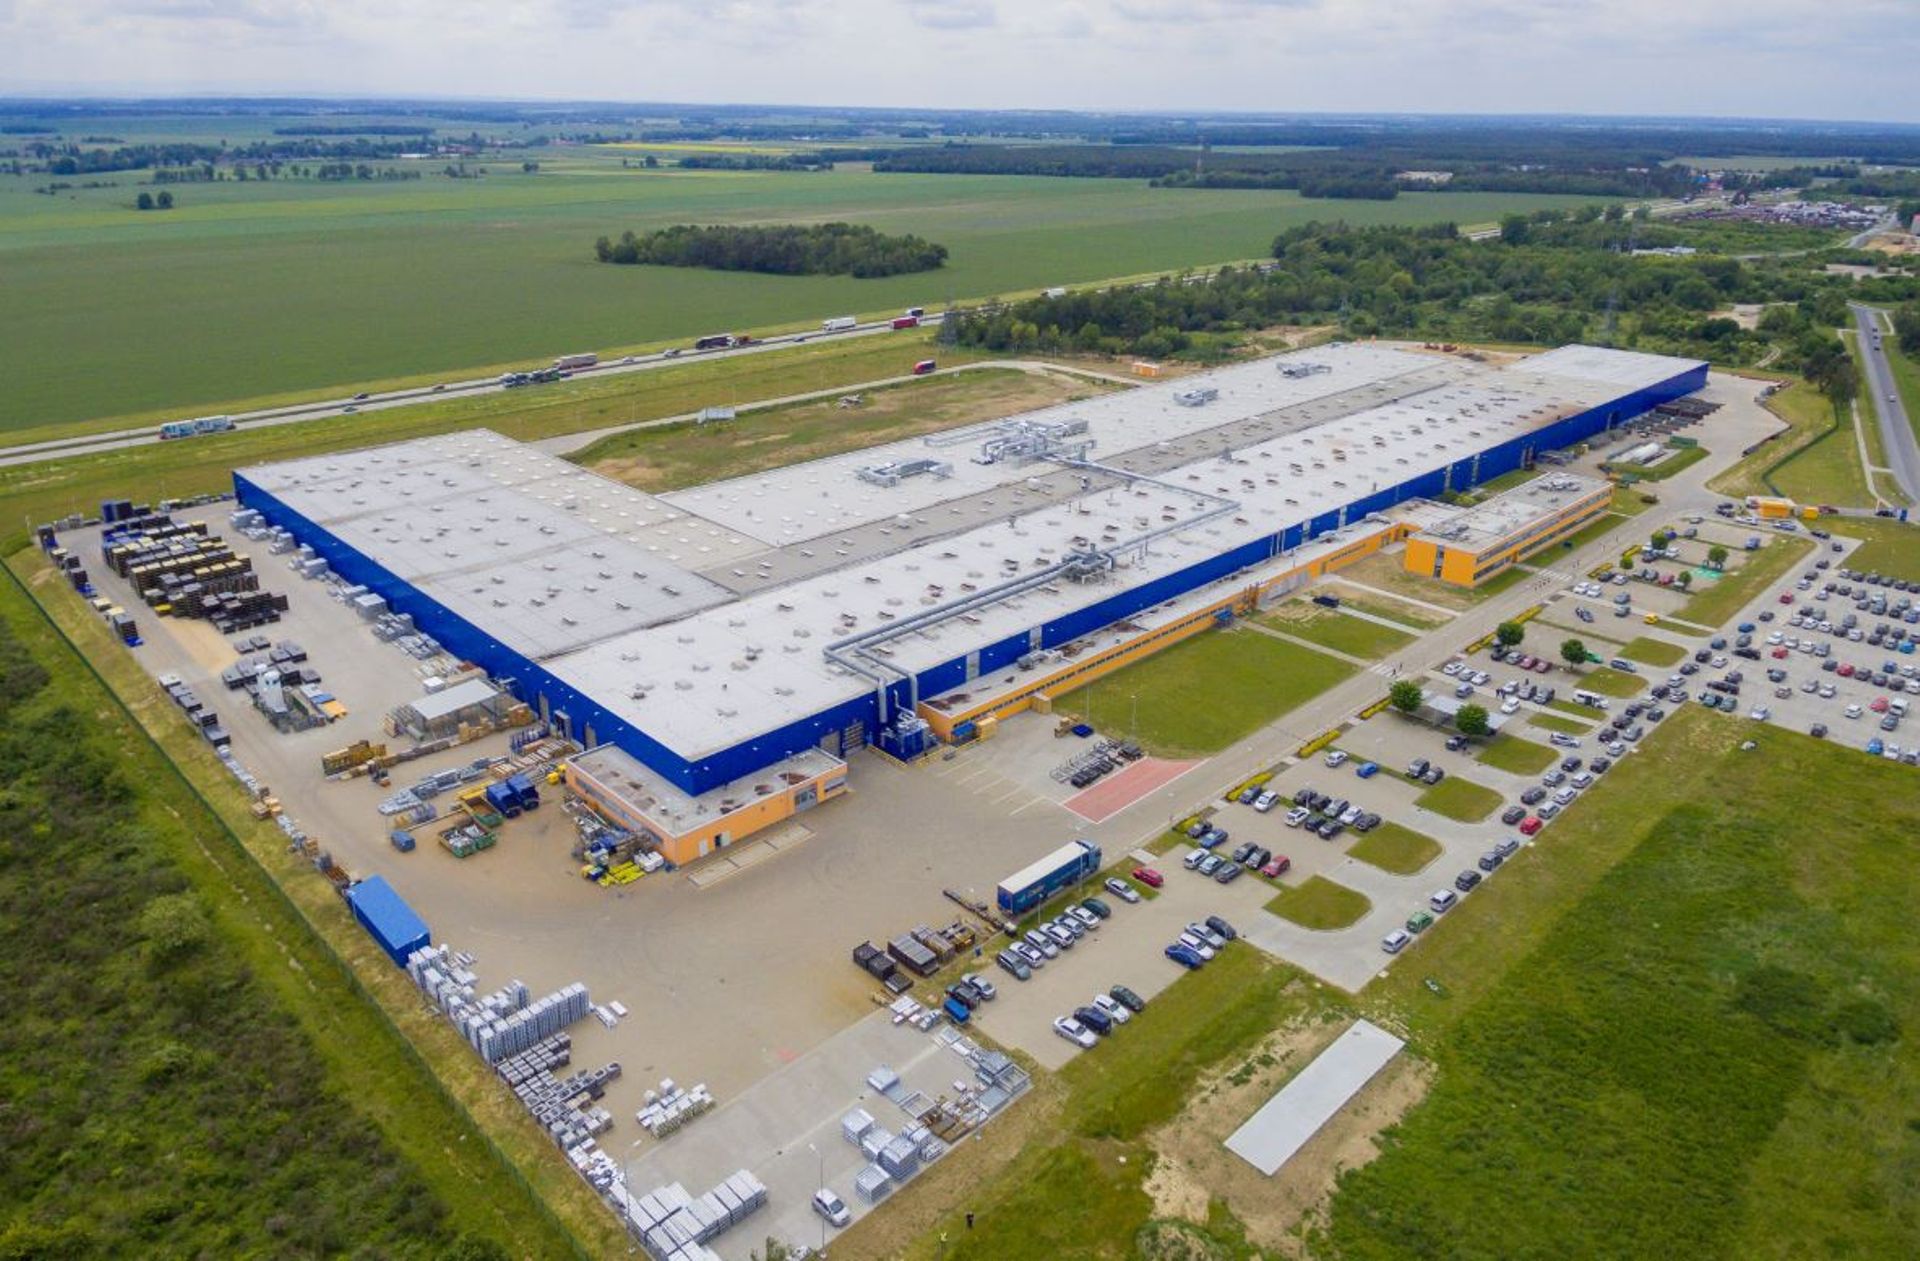 Na Dolnym Śląsku trwa rozbudowa fabryki urządzeń techniki przeładunku niemieckiej firmy Hörmann